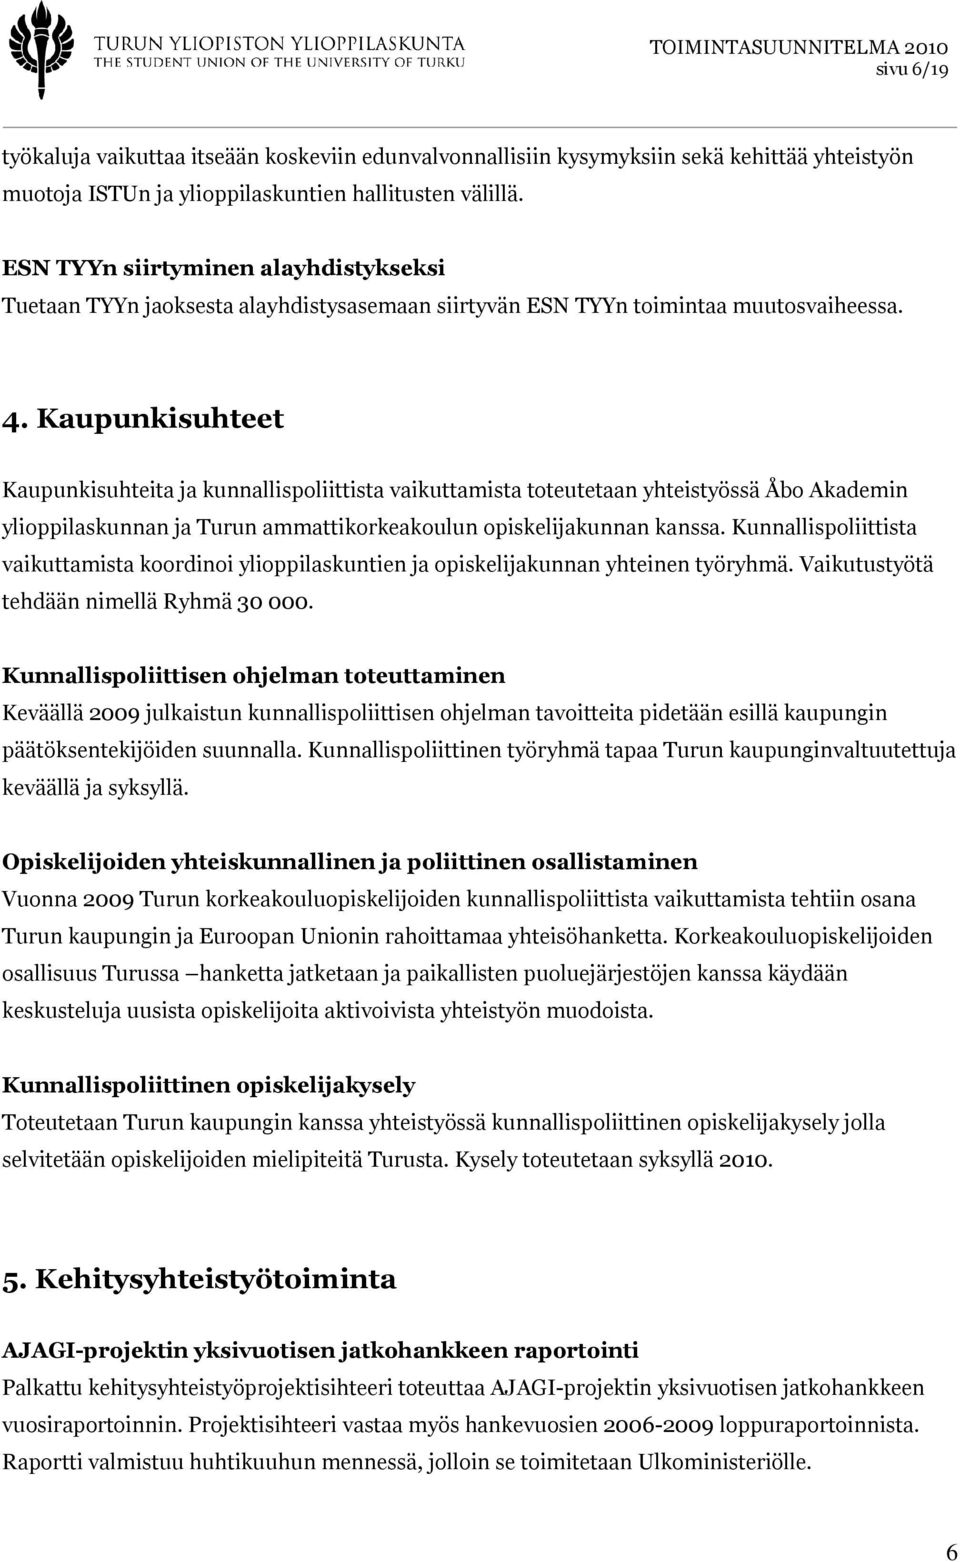 Kaupunkisuhteet Kaupunkisuhteita ja kunnallispoliittista vaikuttamista toteutetaan yhteistyössä Åbo Akademin ylioppilaskunnan ja Turun ammattikorkeakoulun opiskelijakunnan kanssa.